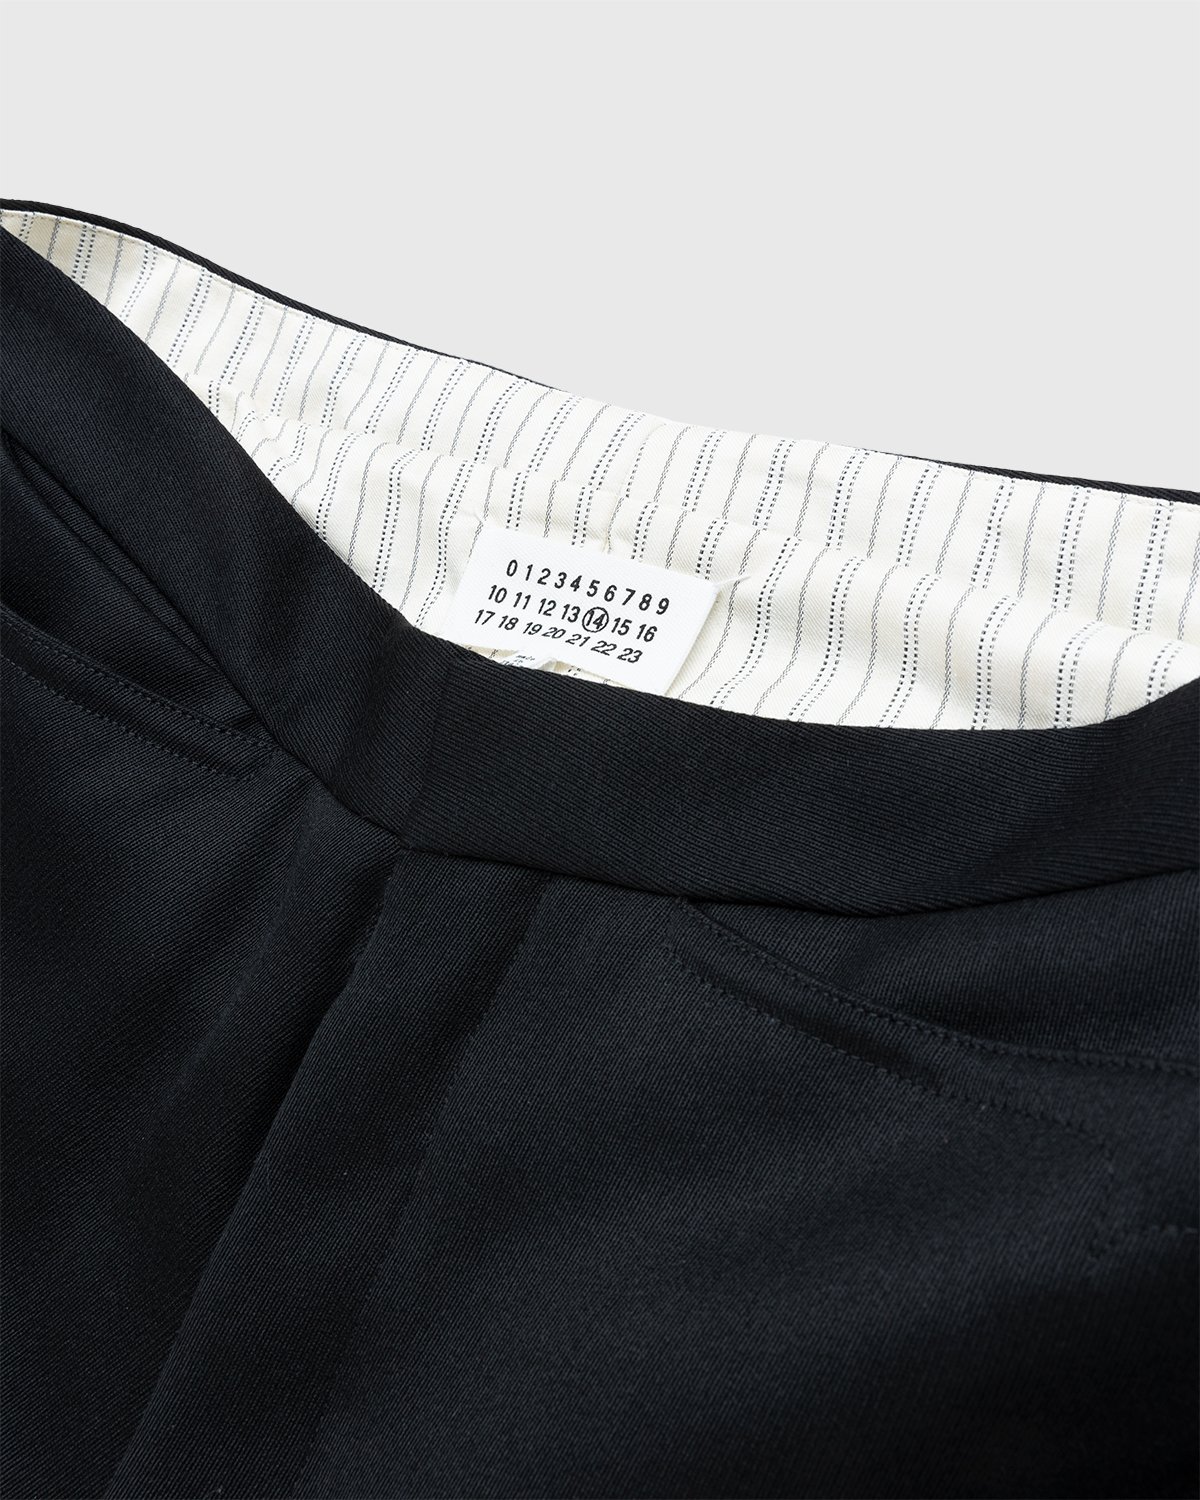 Maison Margiela - Gabardine Trousers Black - Clothing - Black - Image 3